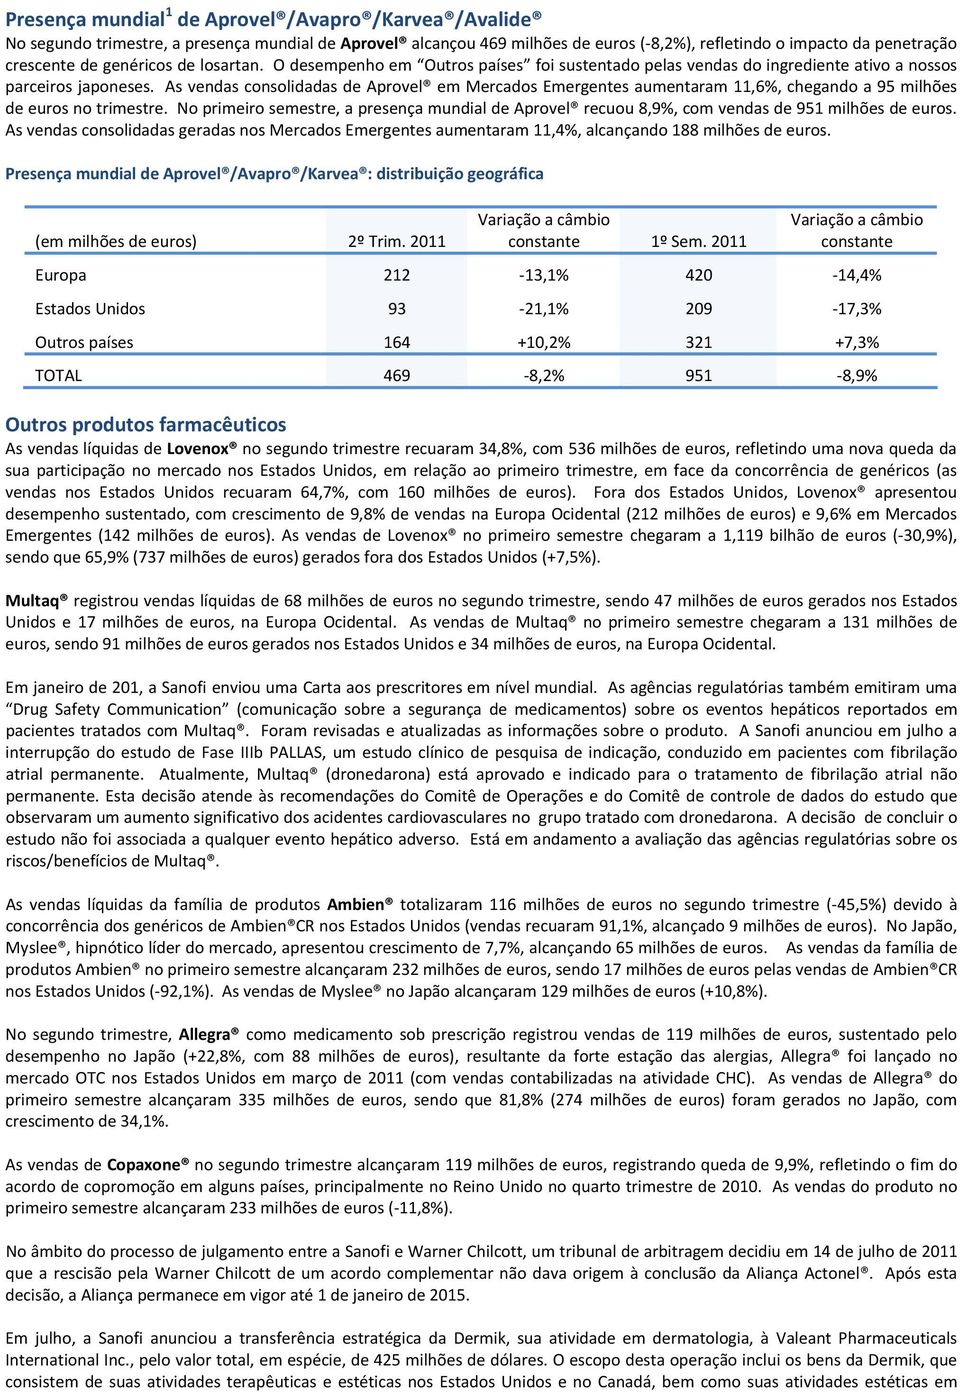 As vendas consolidadas de Aprovel em Mercados Emergentes aumentaram 11,6%, chegando a 95 milhões de euros no trimestre.